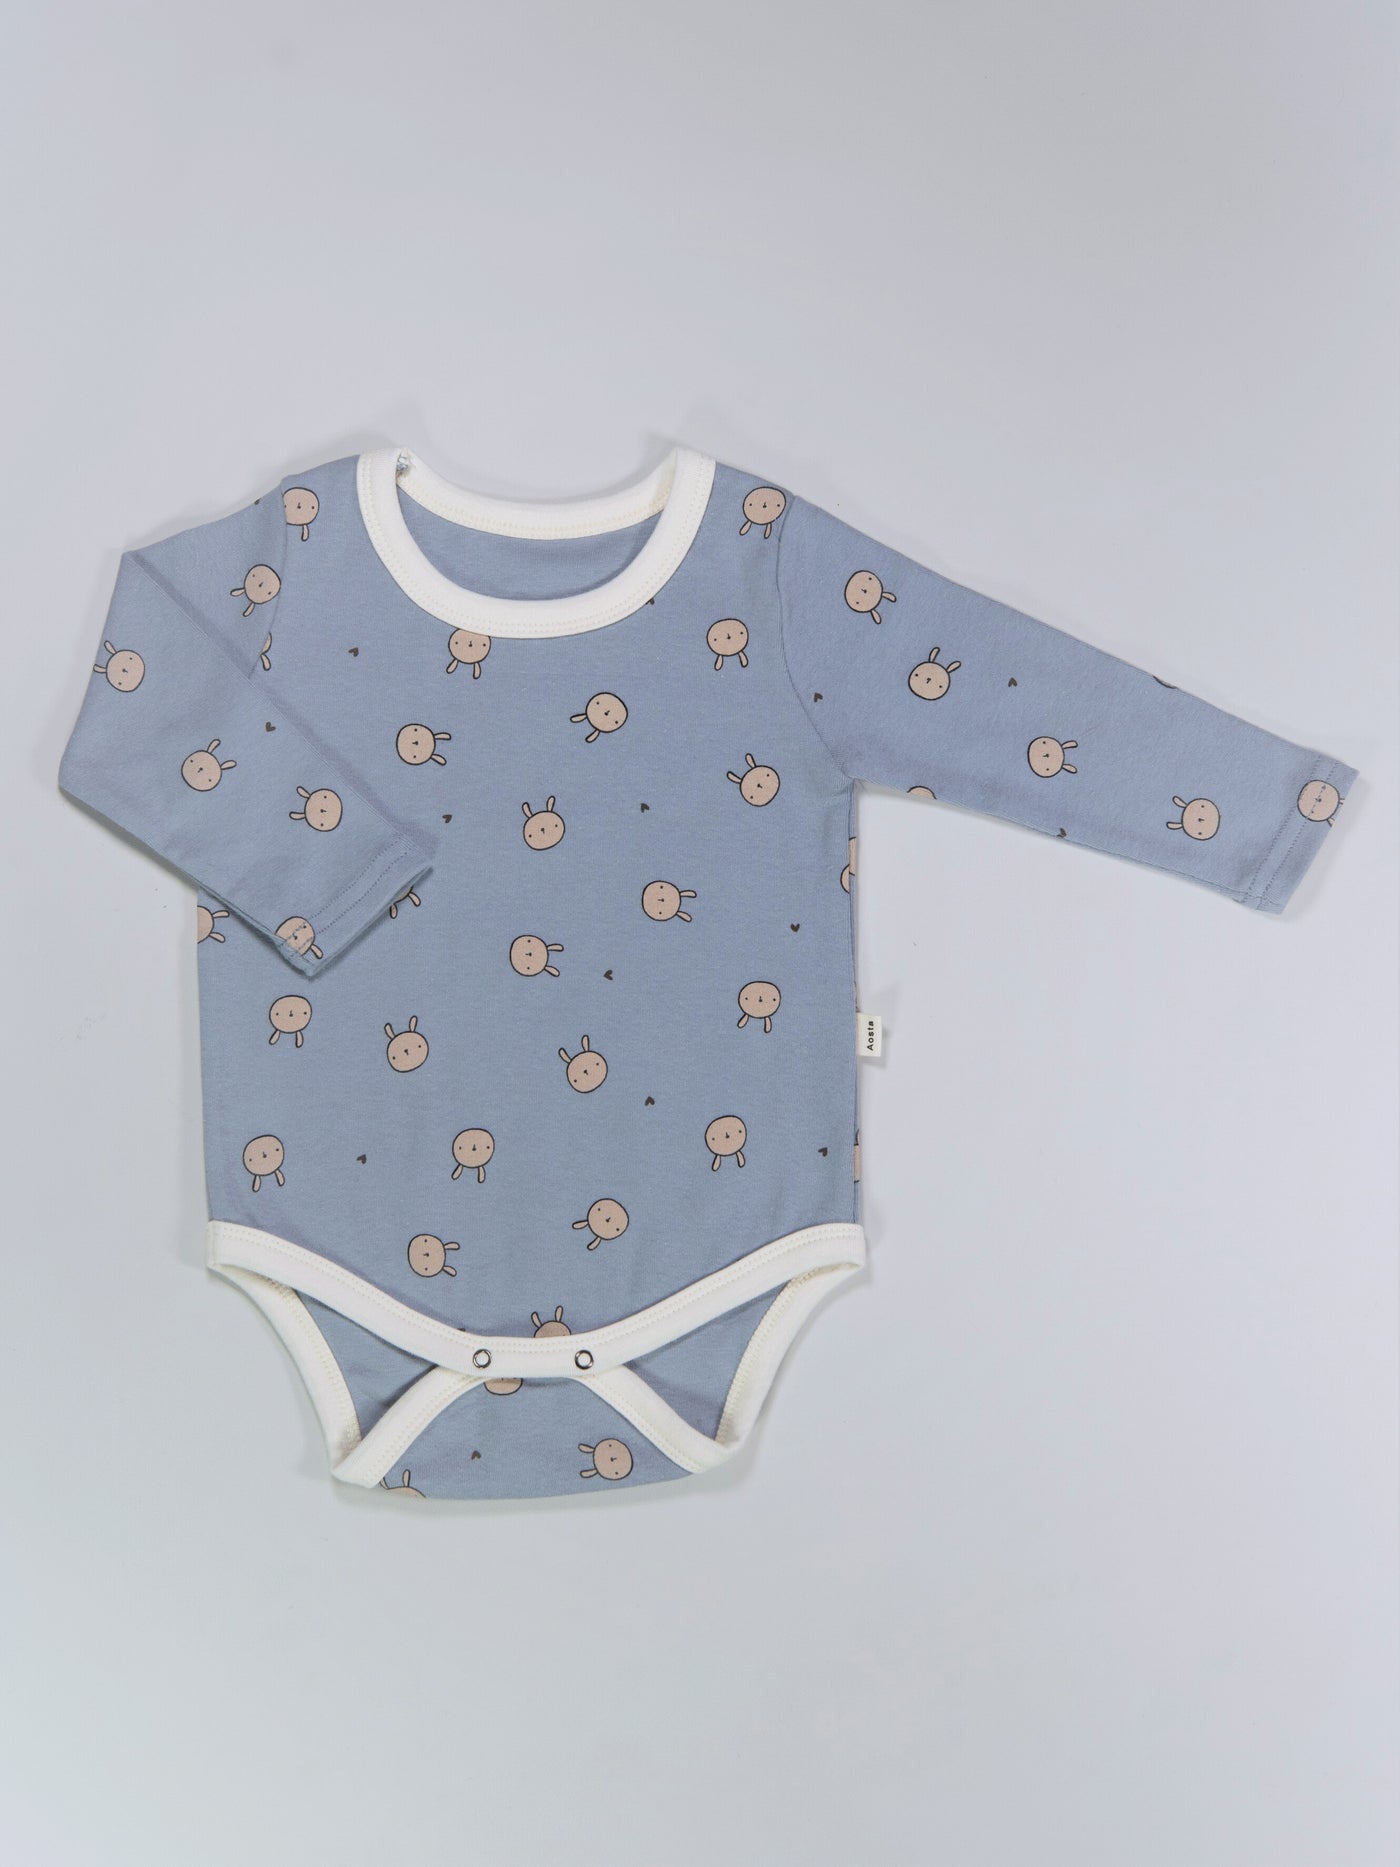 Bunny printed long sleeve bodysuit onesie for babies